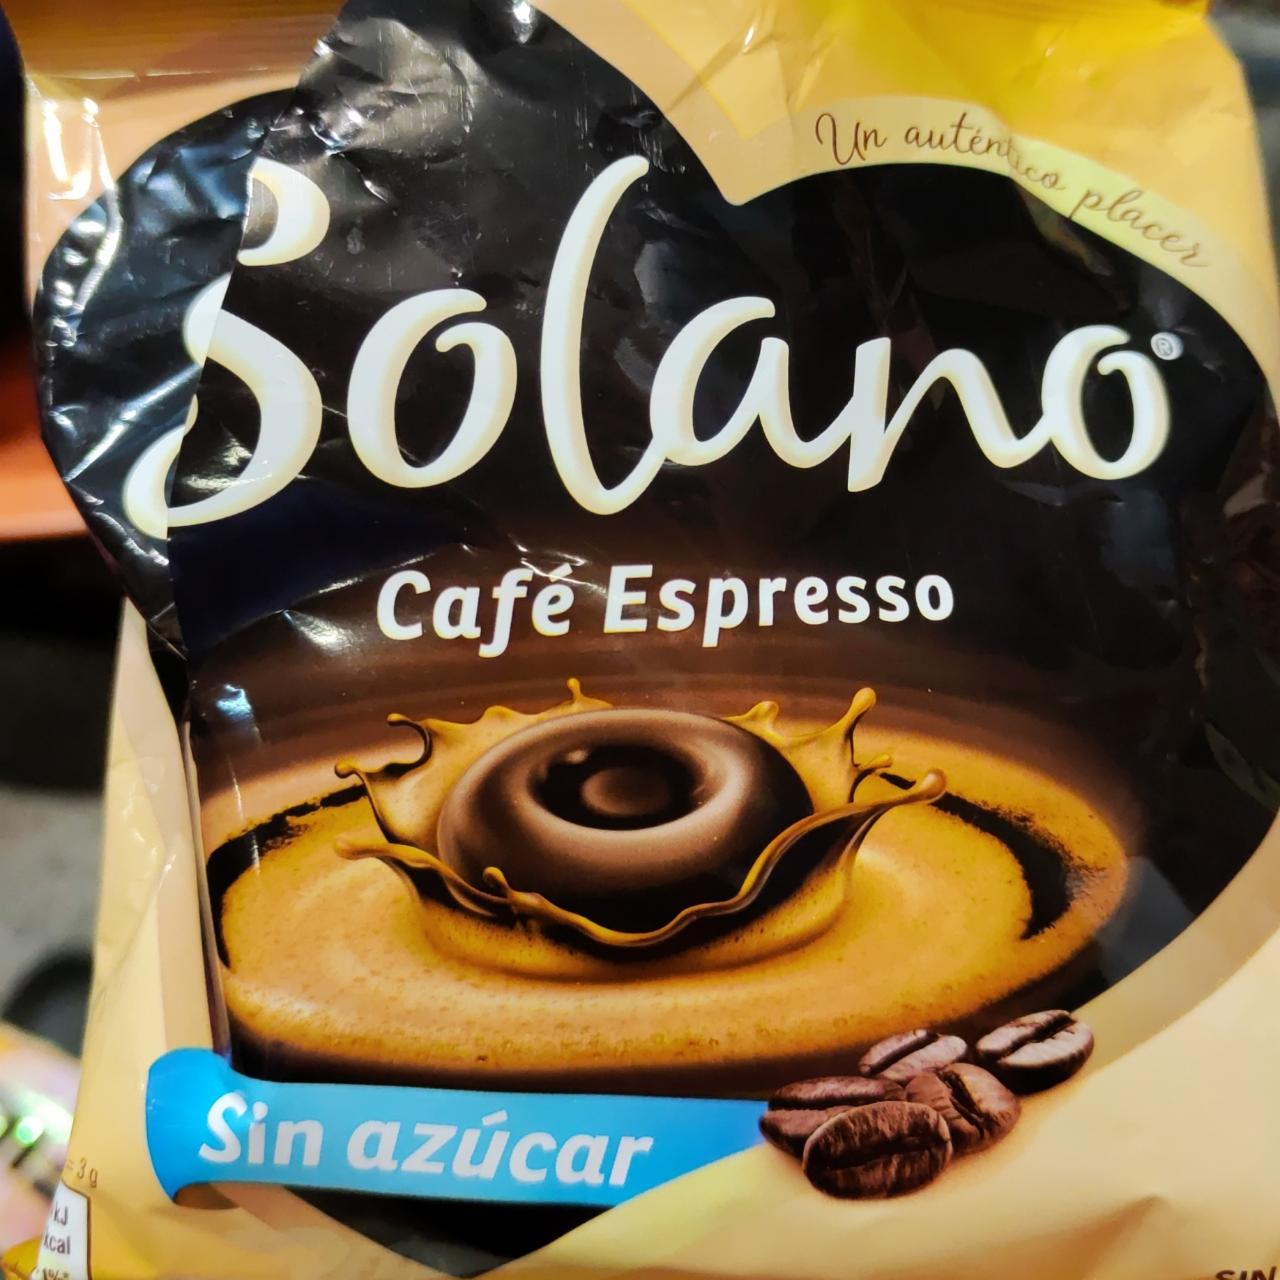 Fotografie - Café Espresso Sin azúcar Solano